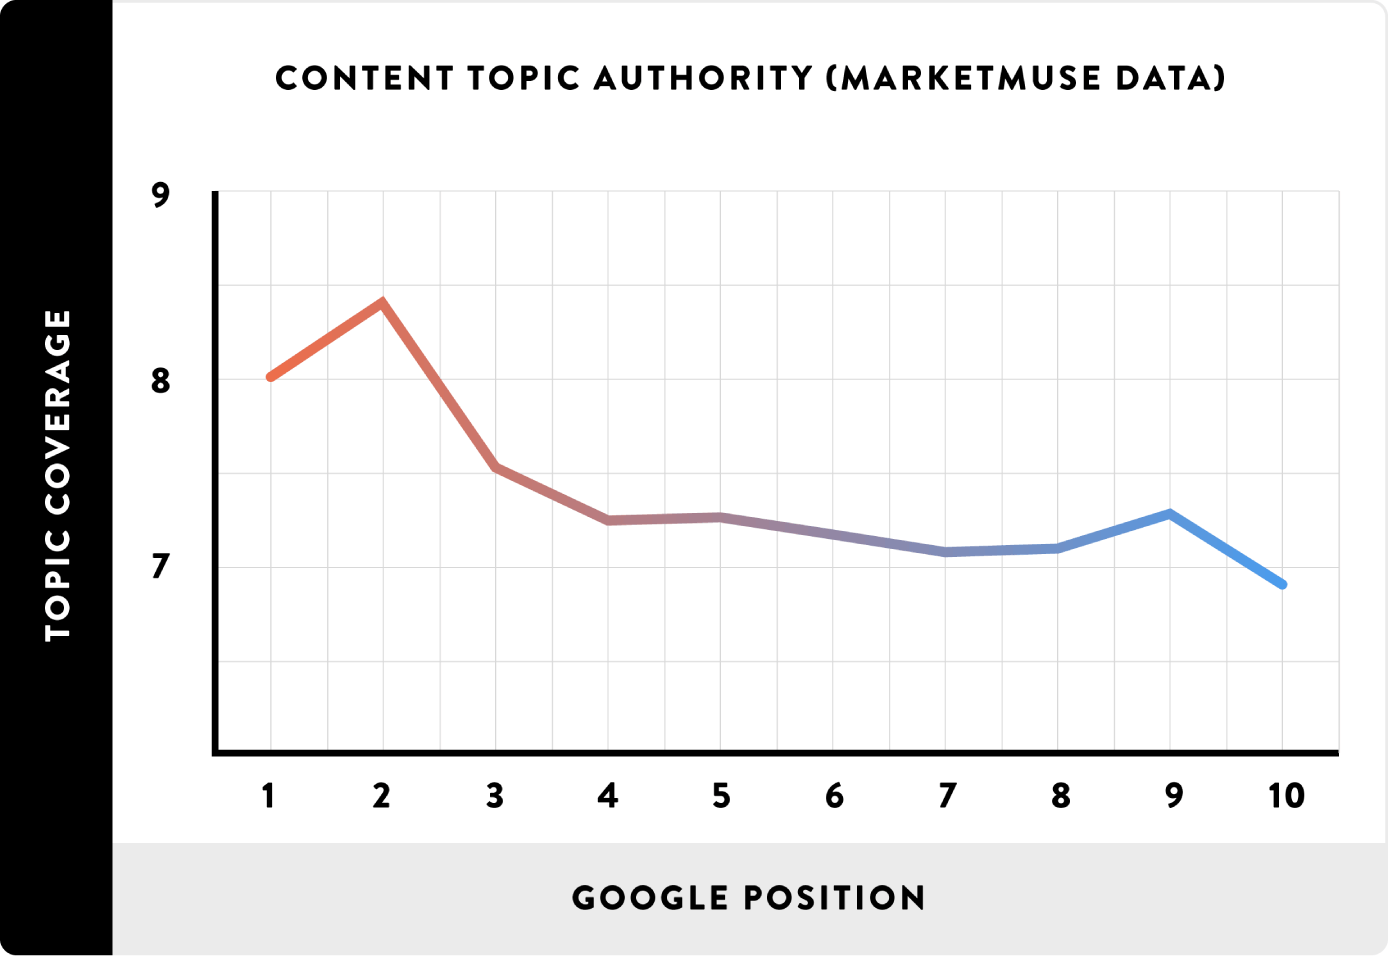 Content topic authority